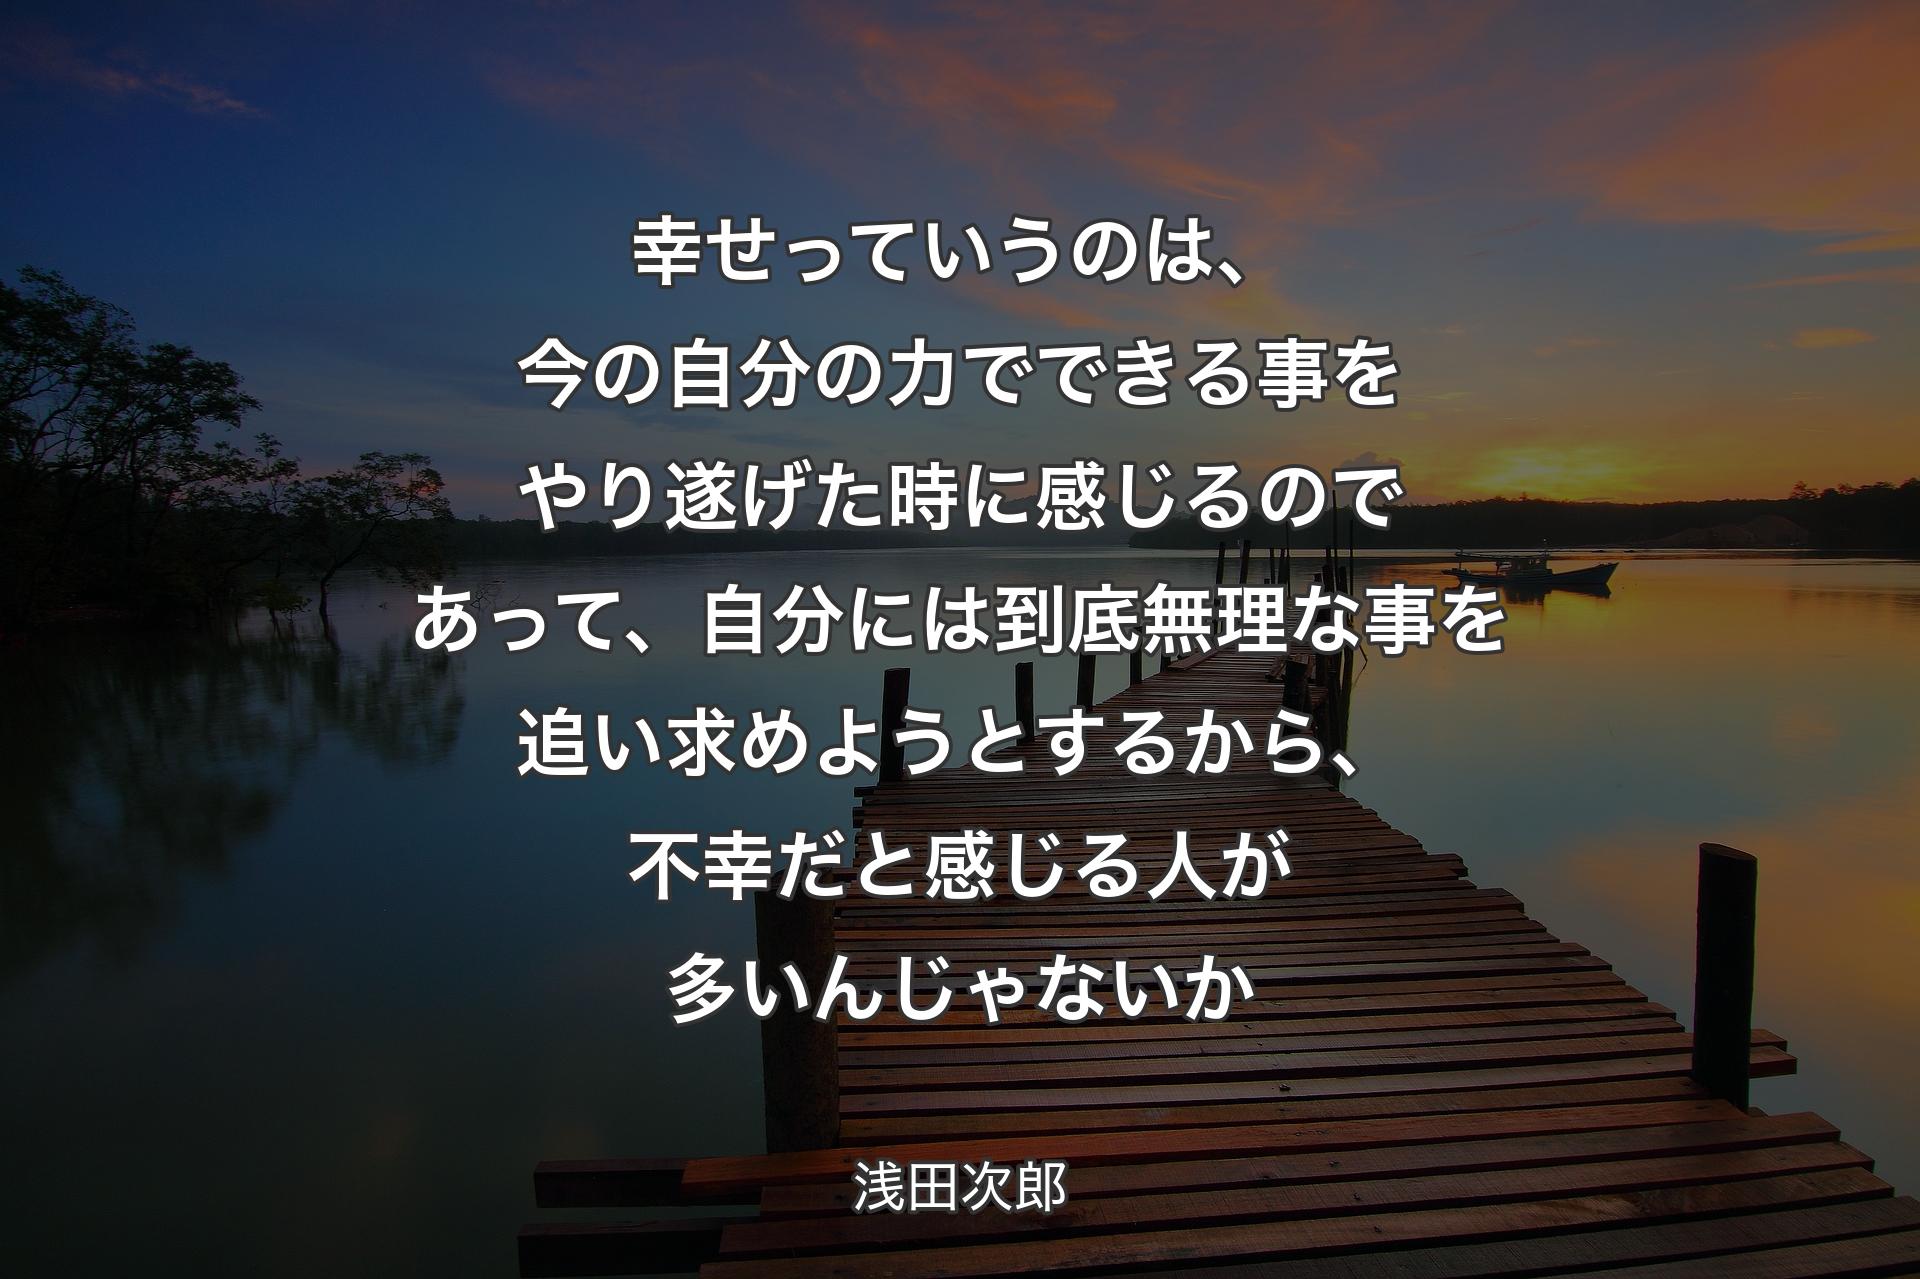 【背景3】幸せっていうのは、今の自分の力でできる事をやり遂げた時に感じるのであって、自分には到底無理な事を追い求めようとするから、不幸だと感じる人が多いんじゃないか - 浅田次郎